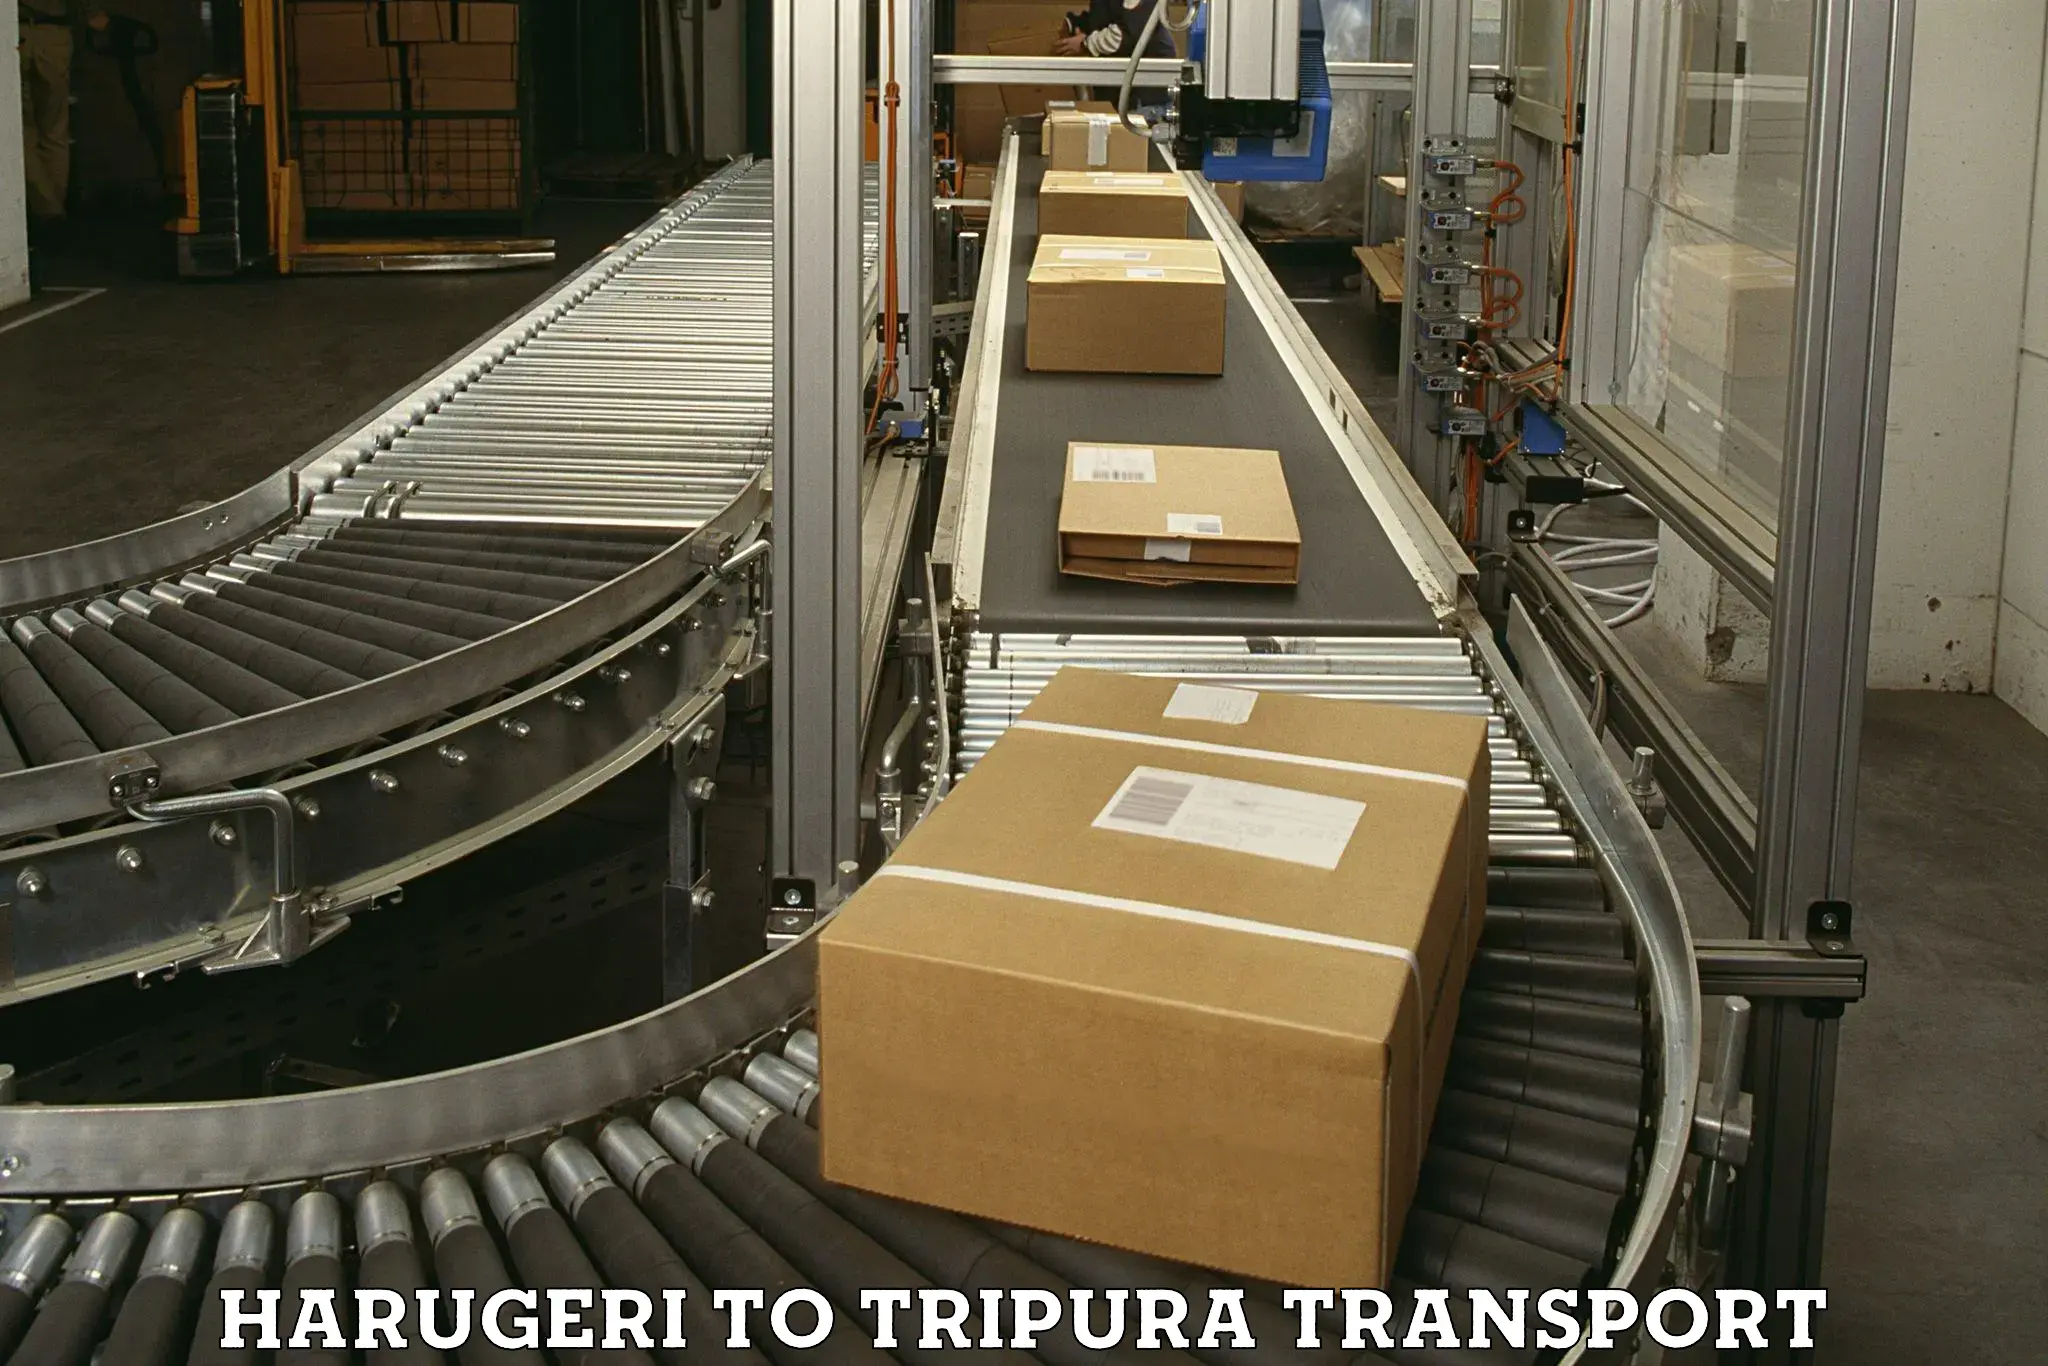 Road transport online services Harugeri to Udaipur Tripura